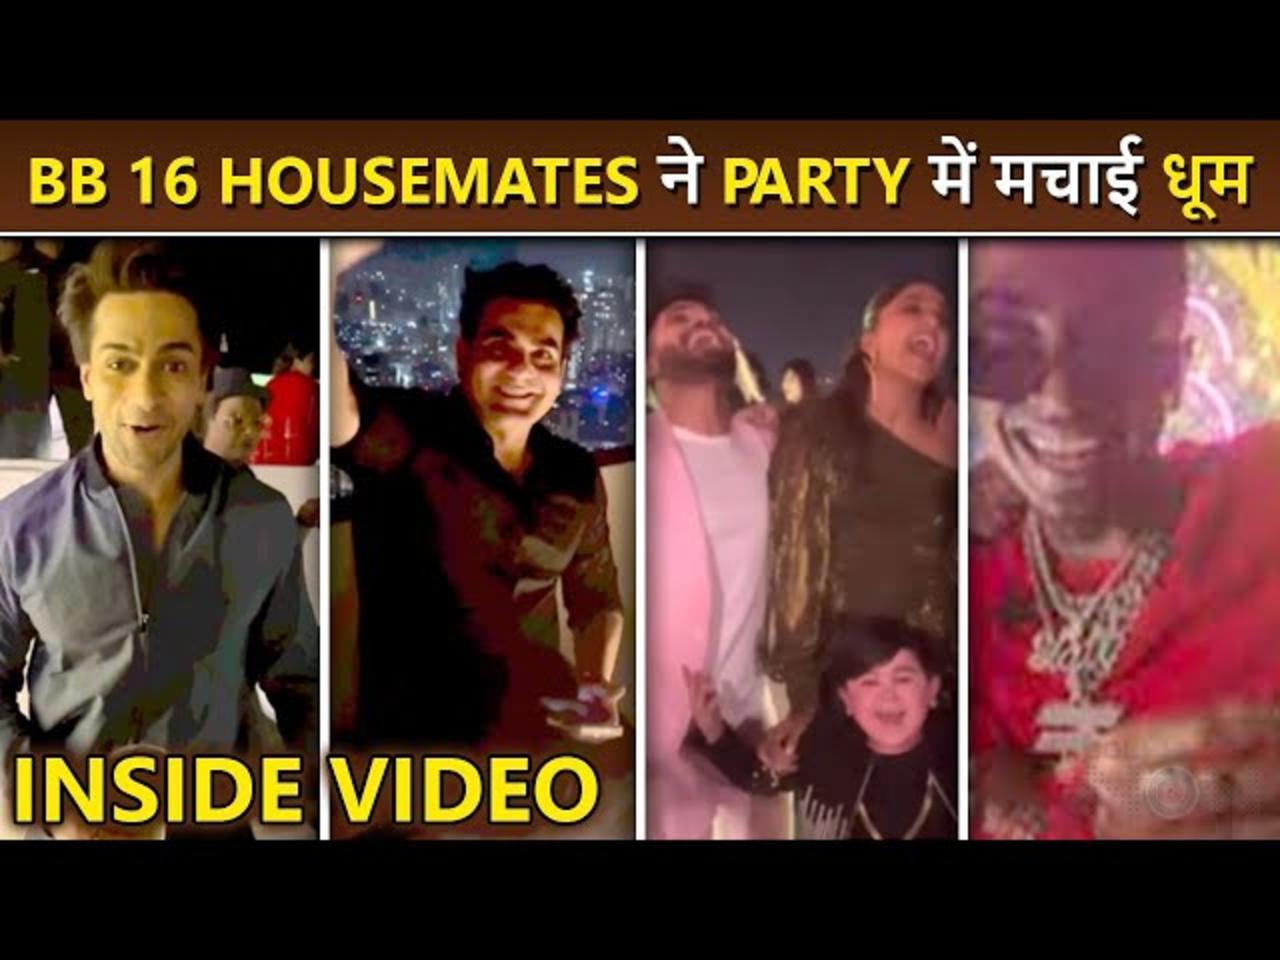 Arbaaz Khan, Farah Khan Party With BB 16 Housemates MC Stan, Sajid Khan, Shalin, Priyanka